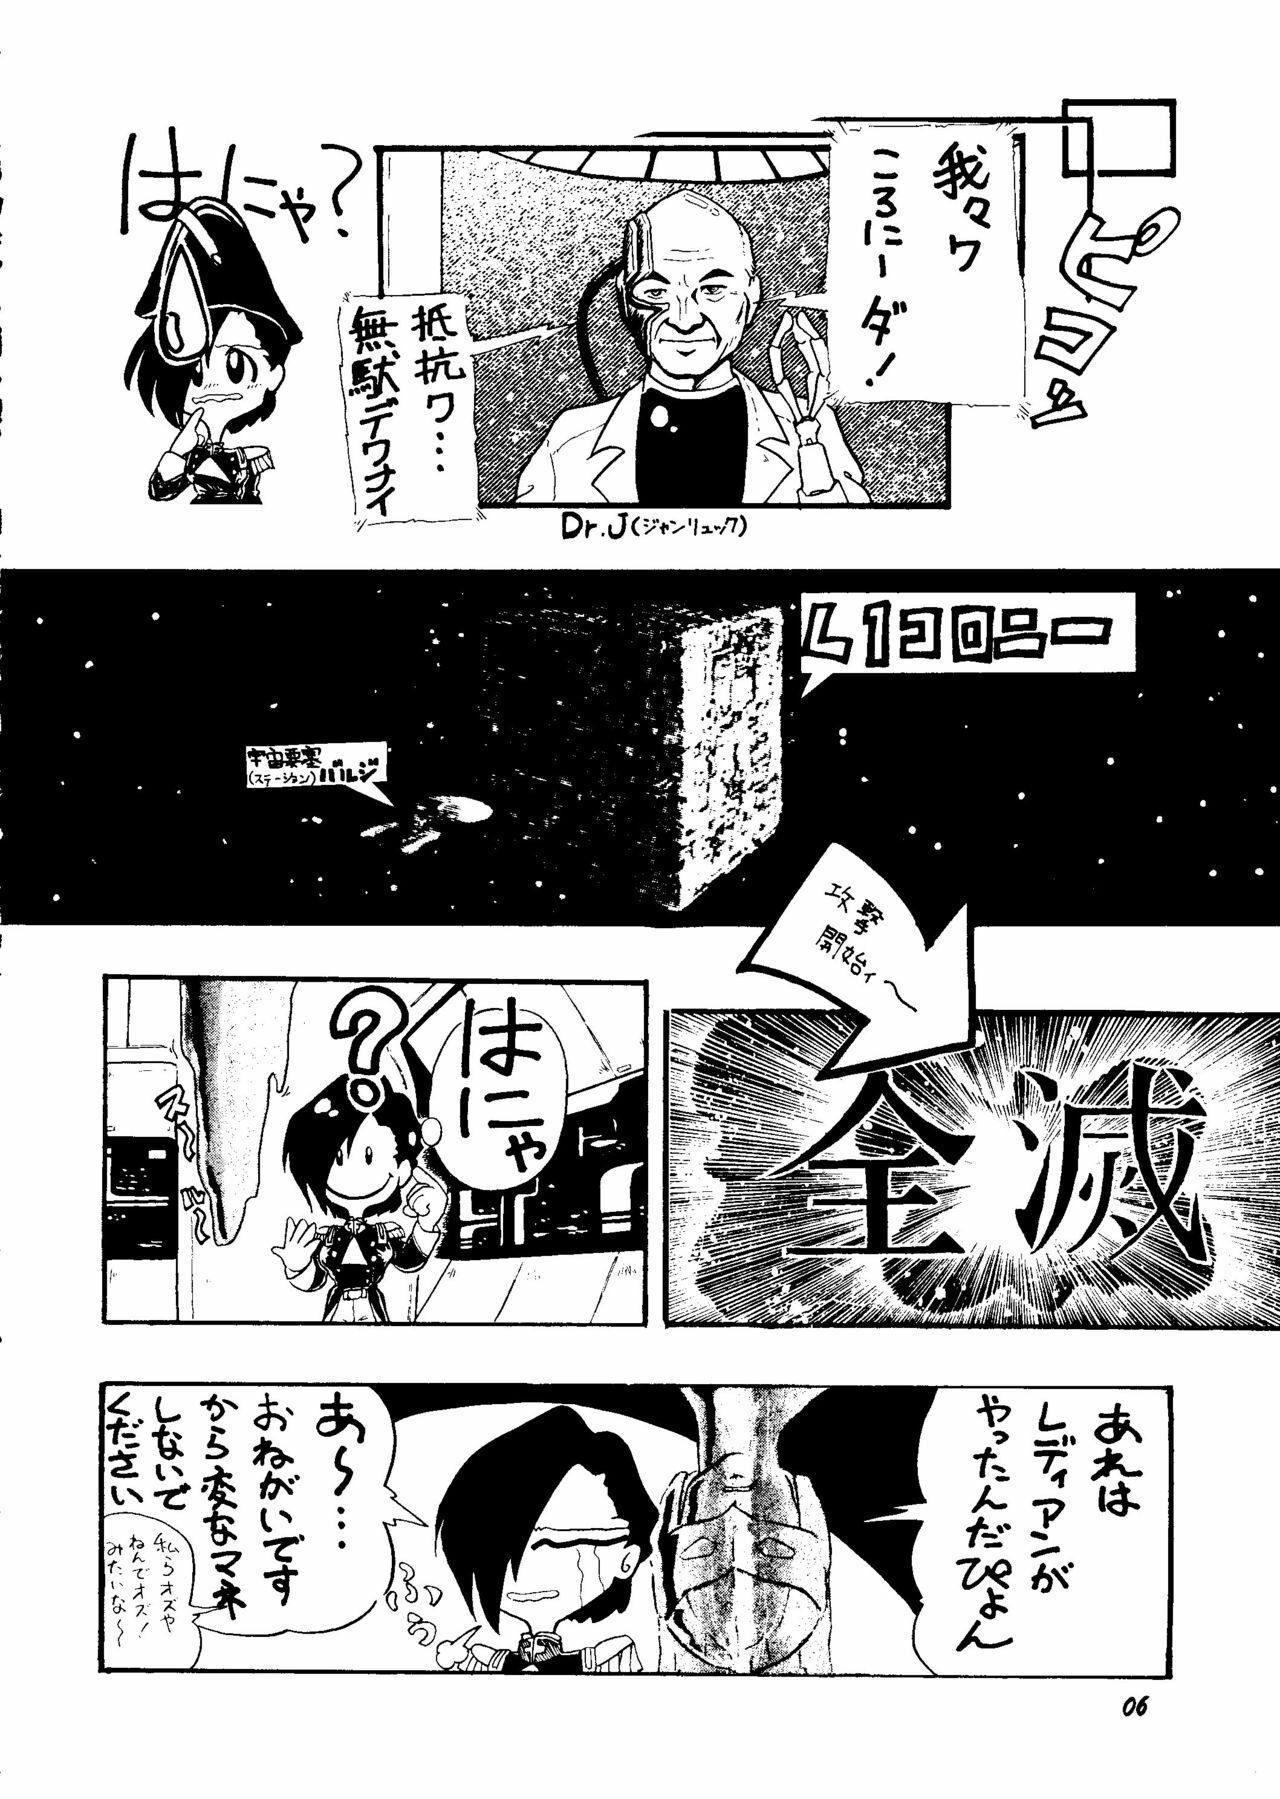 [Rupinasu Touzokudan & Cha Cha Cha Brothers] Shinu no wa Yatsura da (Gundam Wing) page 5 full